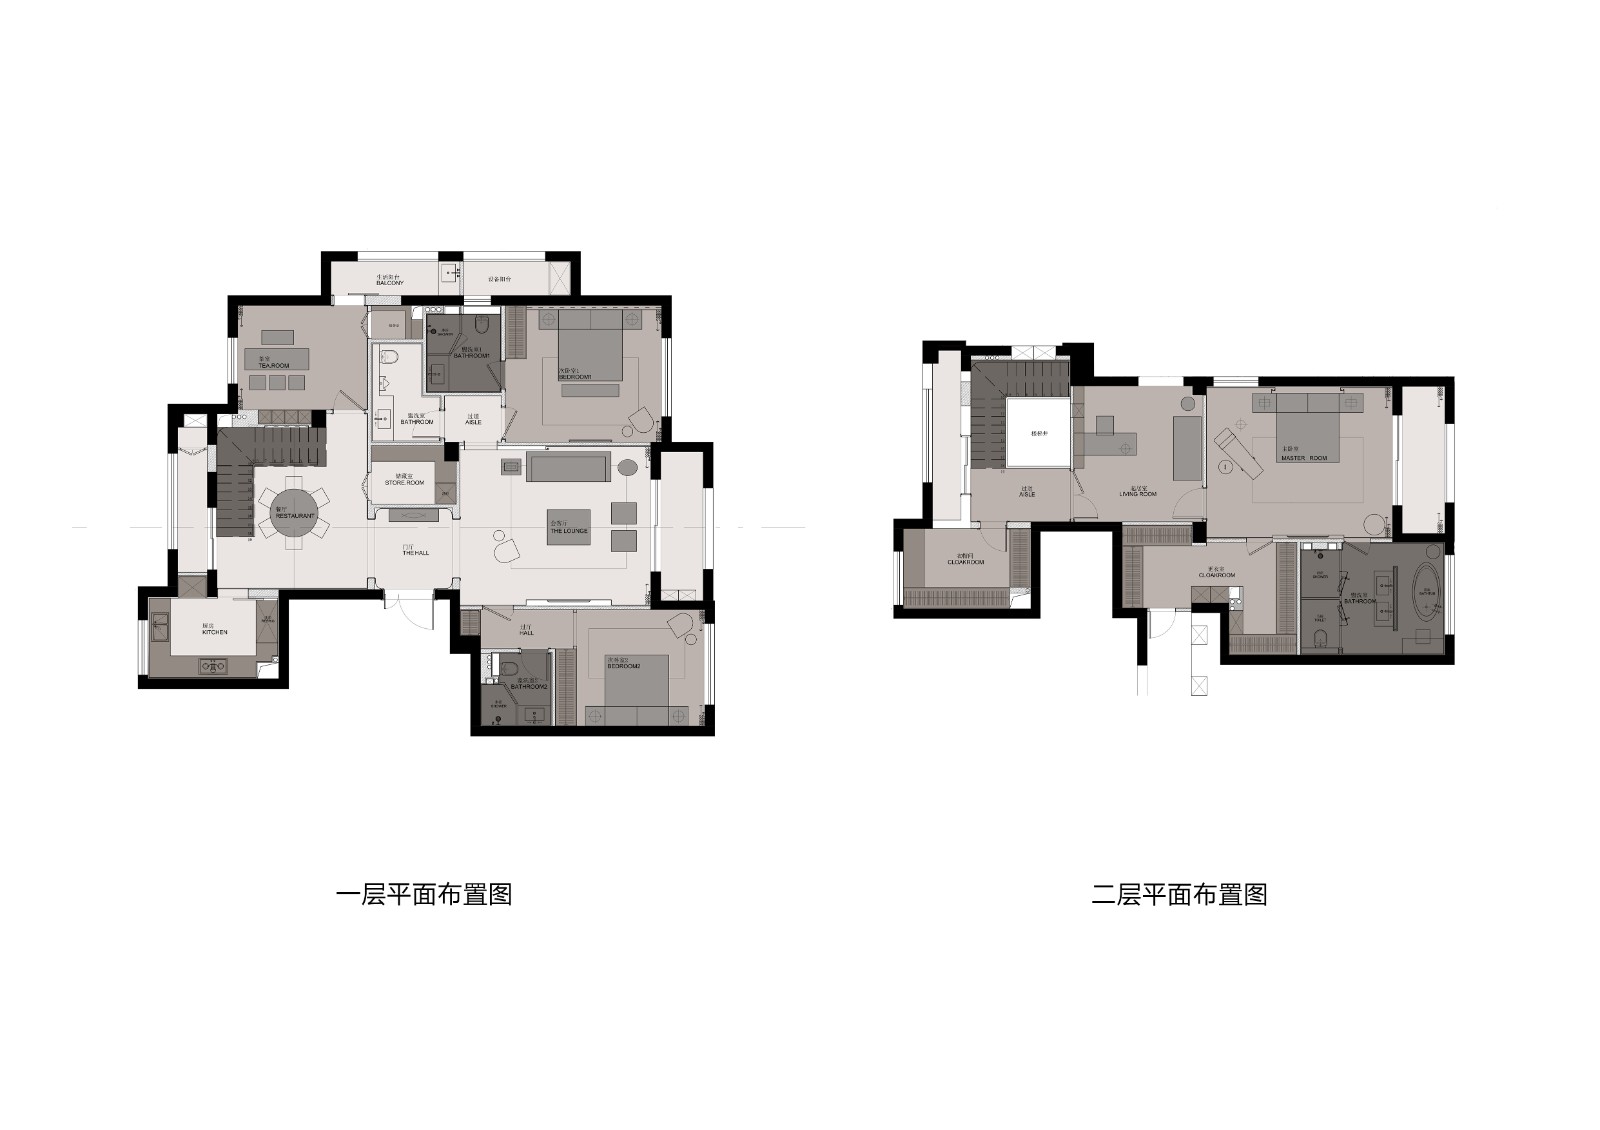 110现代两房装修效果图,诠释简约纯粹装修案例效果图-美广网